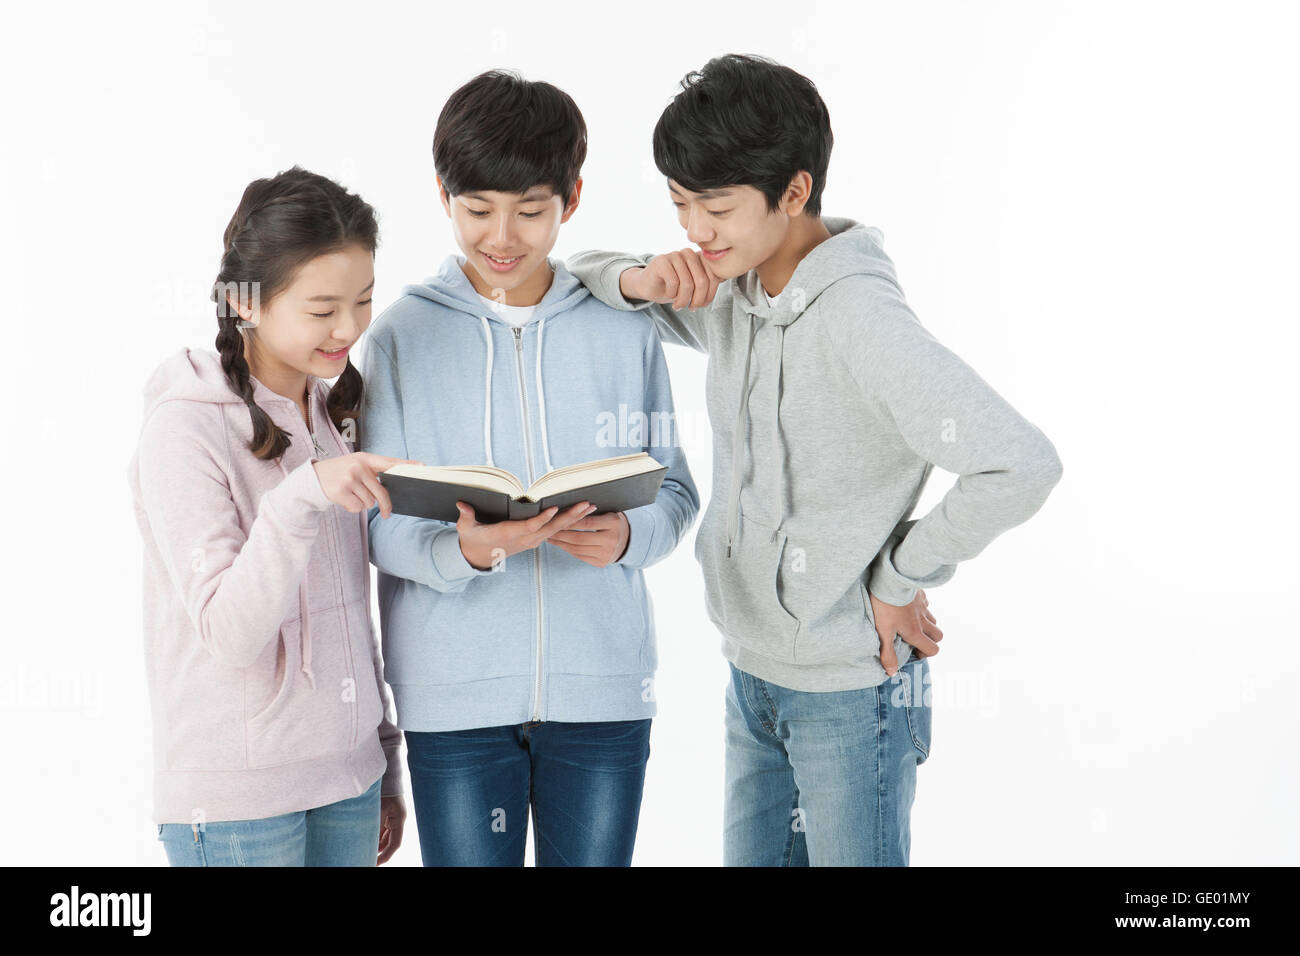 Drei lachende Jugendliche ein Buch Stockfoto